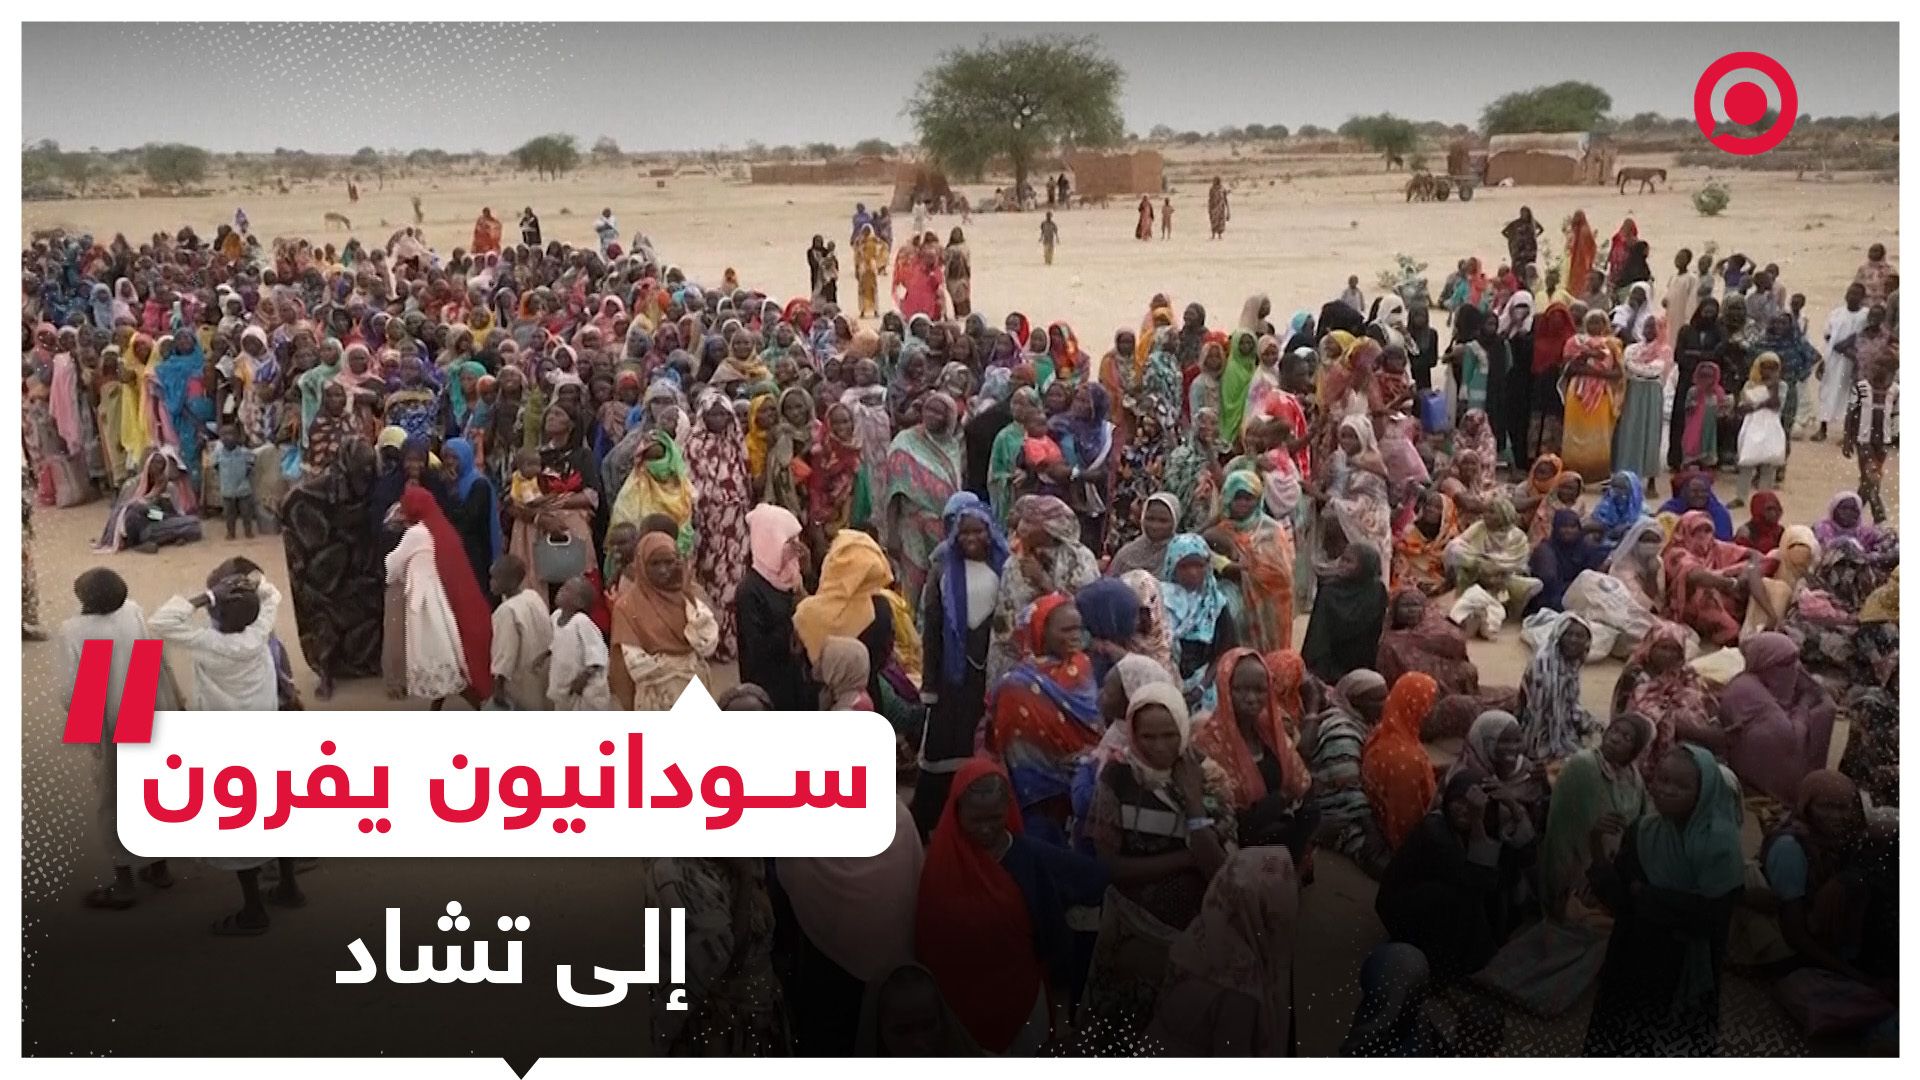 عشرات الآلاف من السودانيين يفرون إلى تشاد